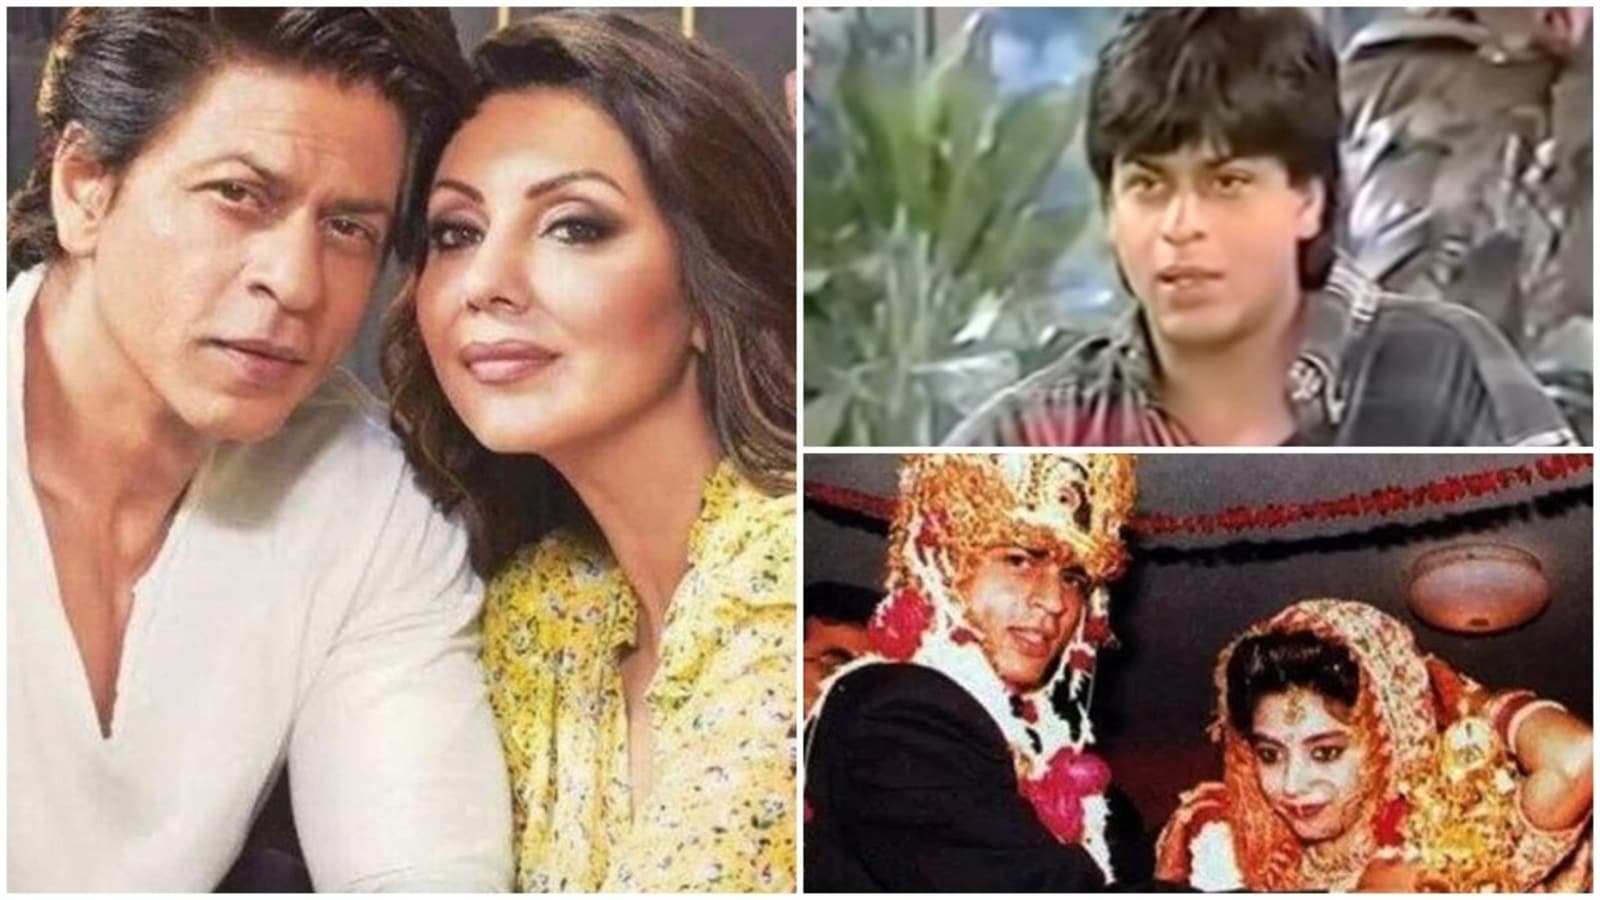 When Shah Rukh Khan trolled in-laws on wedding day: 'Chalo Gauri burka  pehno' | Bollywood - Hindustan Times